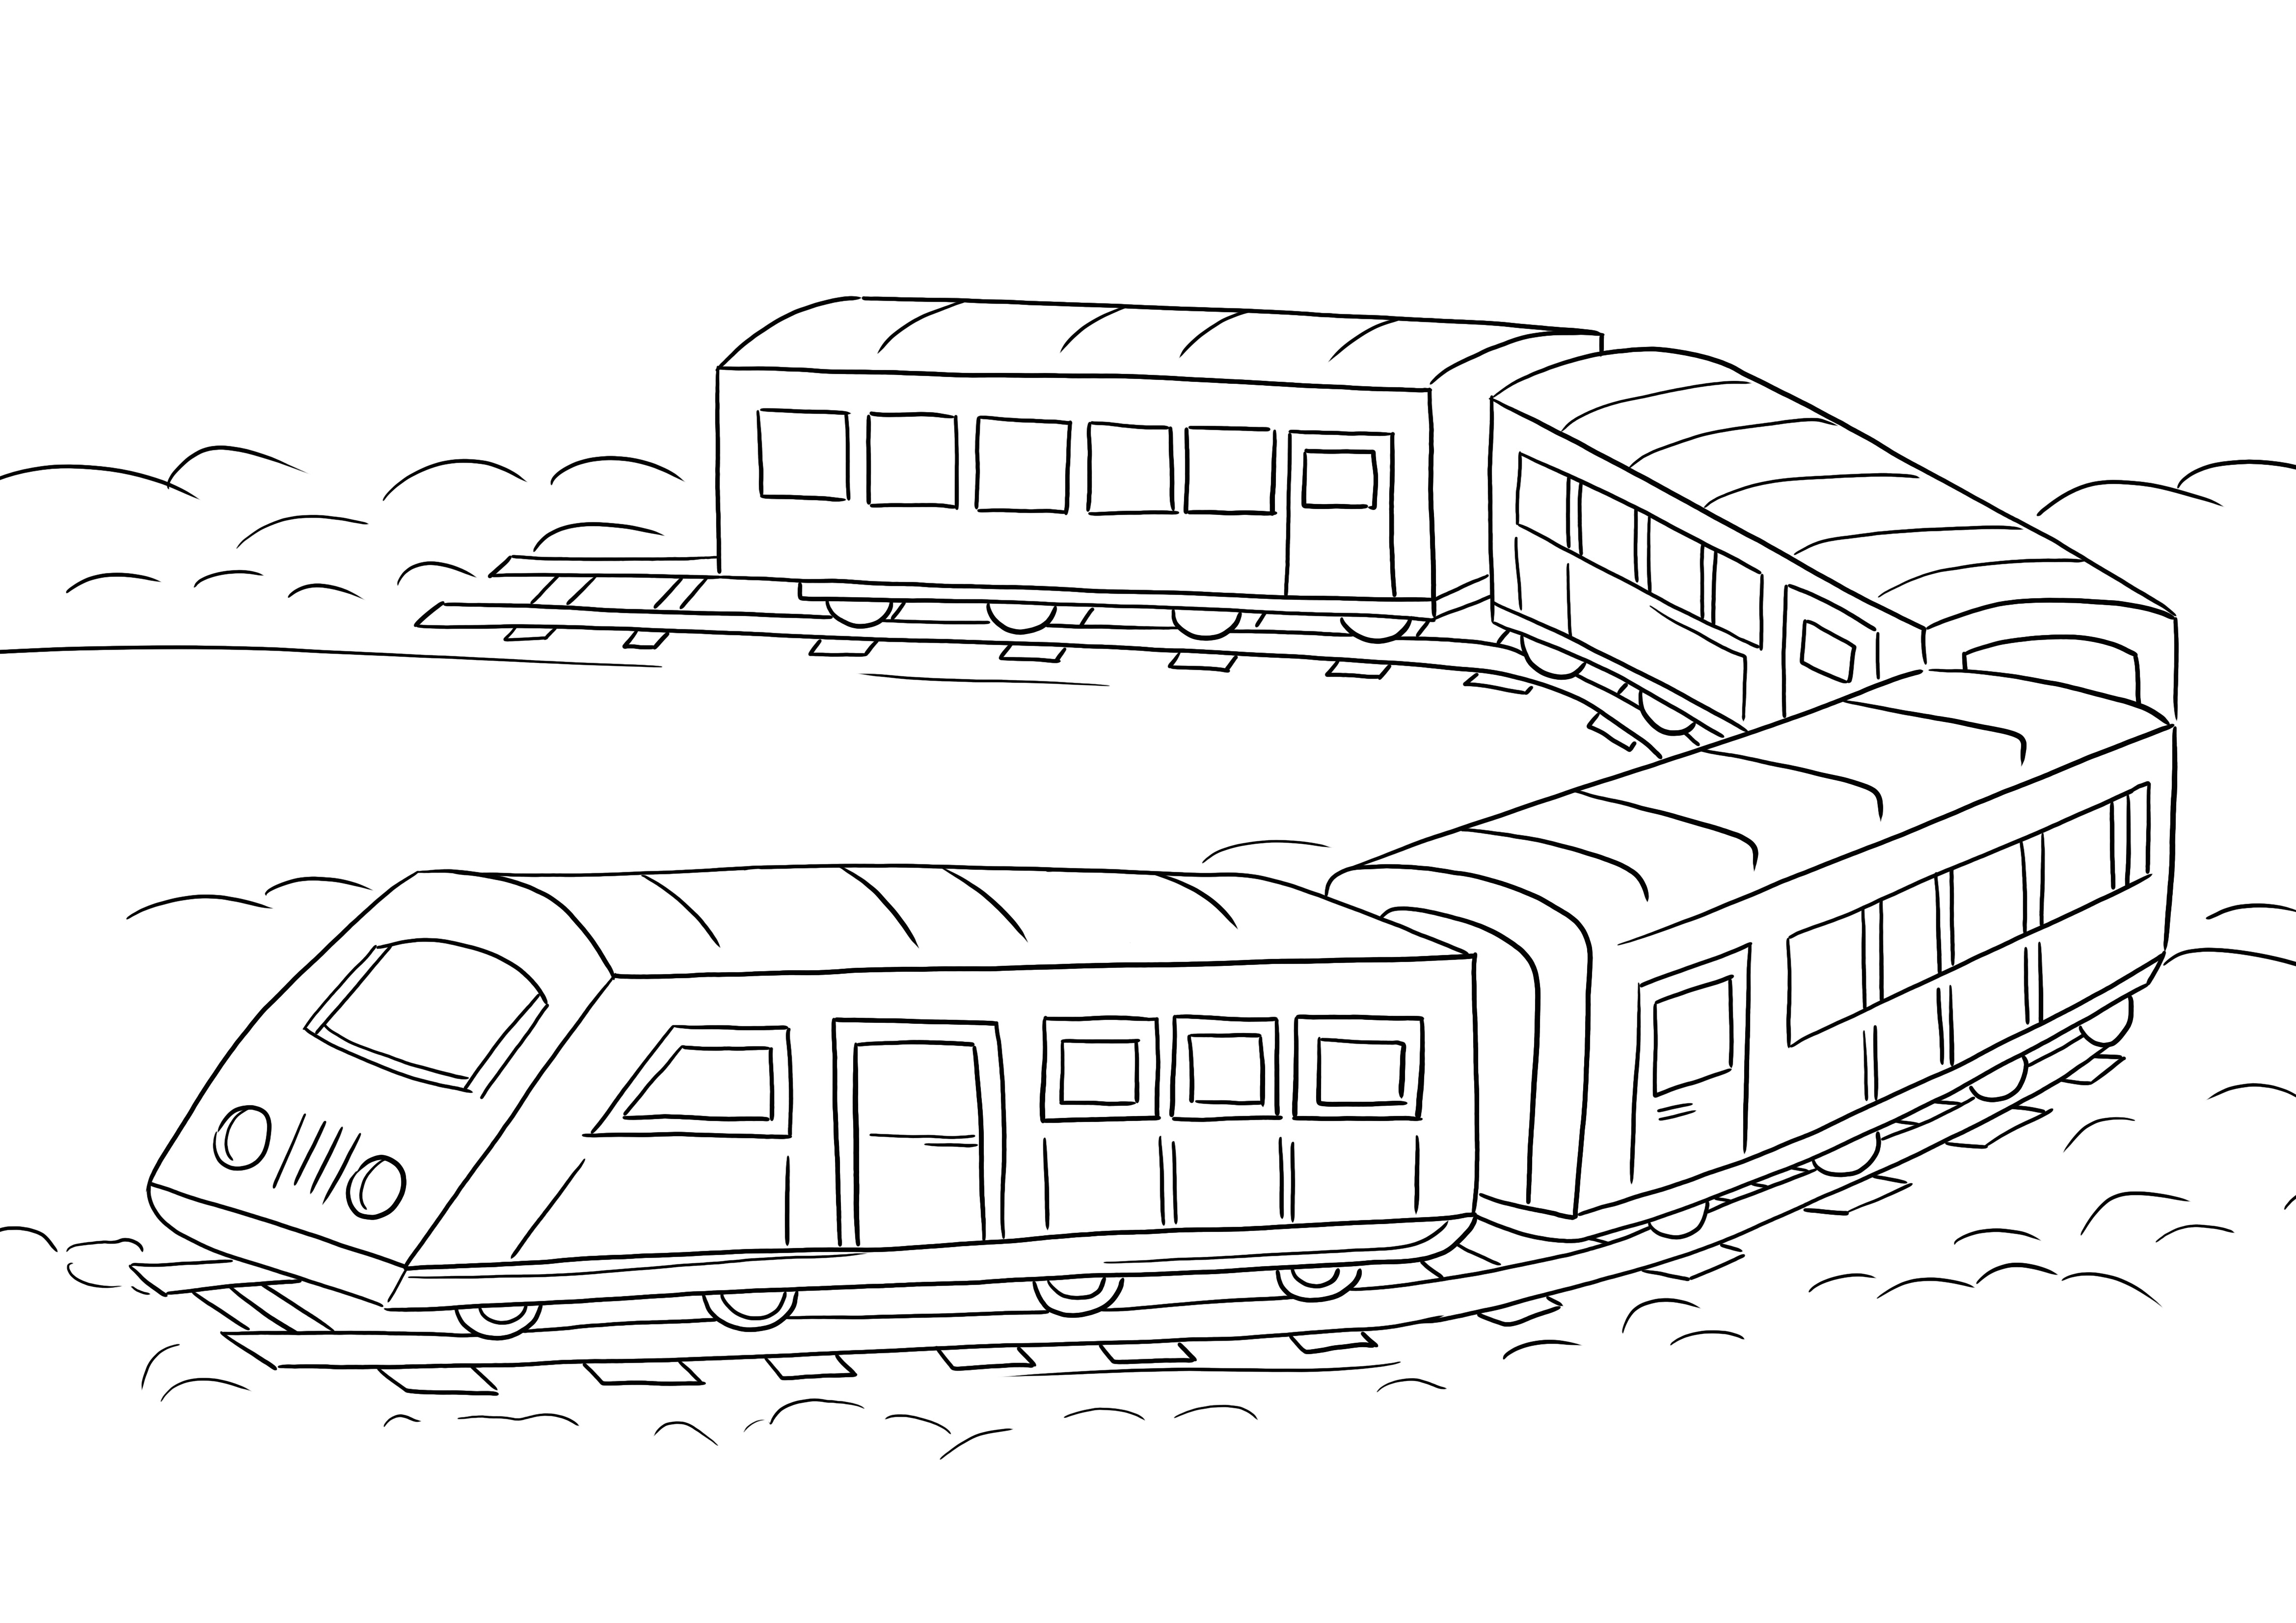 Einfach auszumalende Eisenbahnwaggons zum Ausdrucken oder kostenlosen Herunterladen